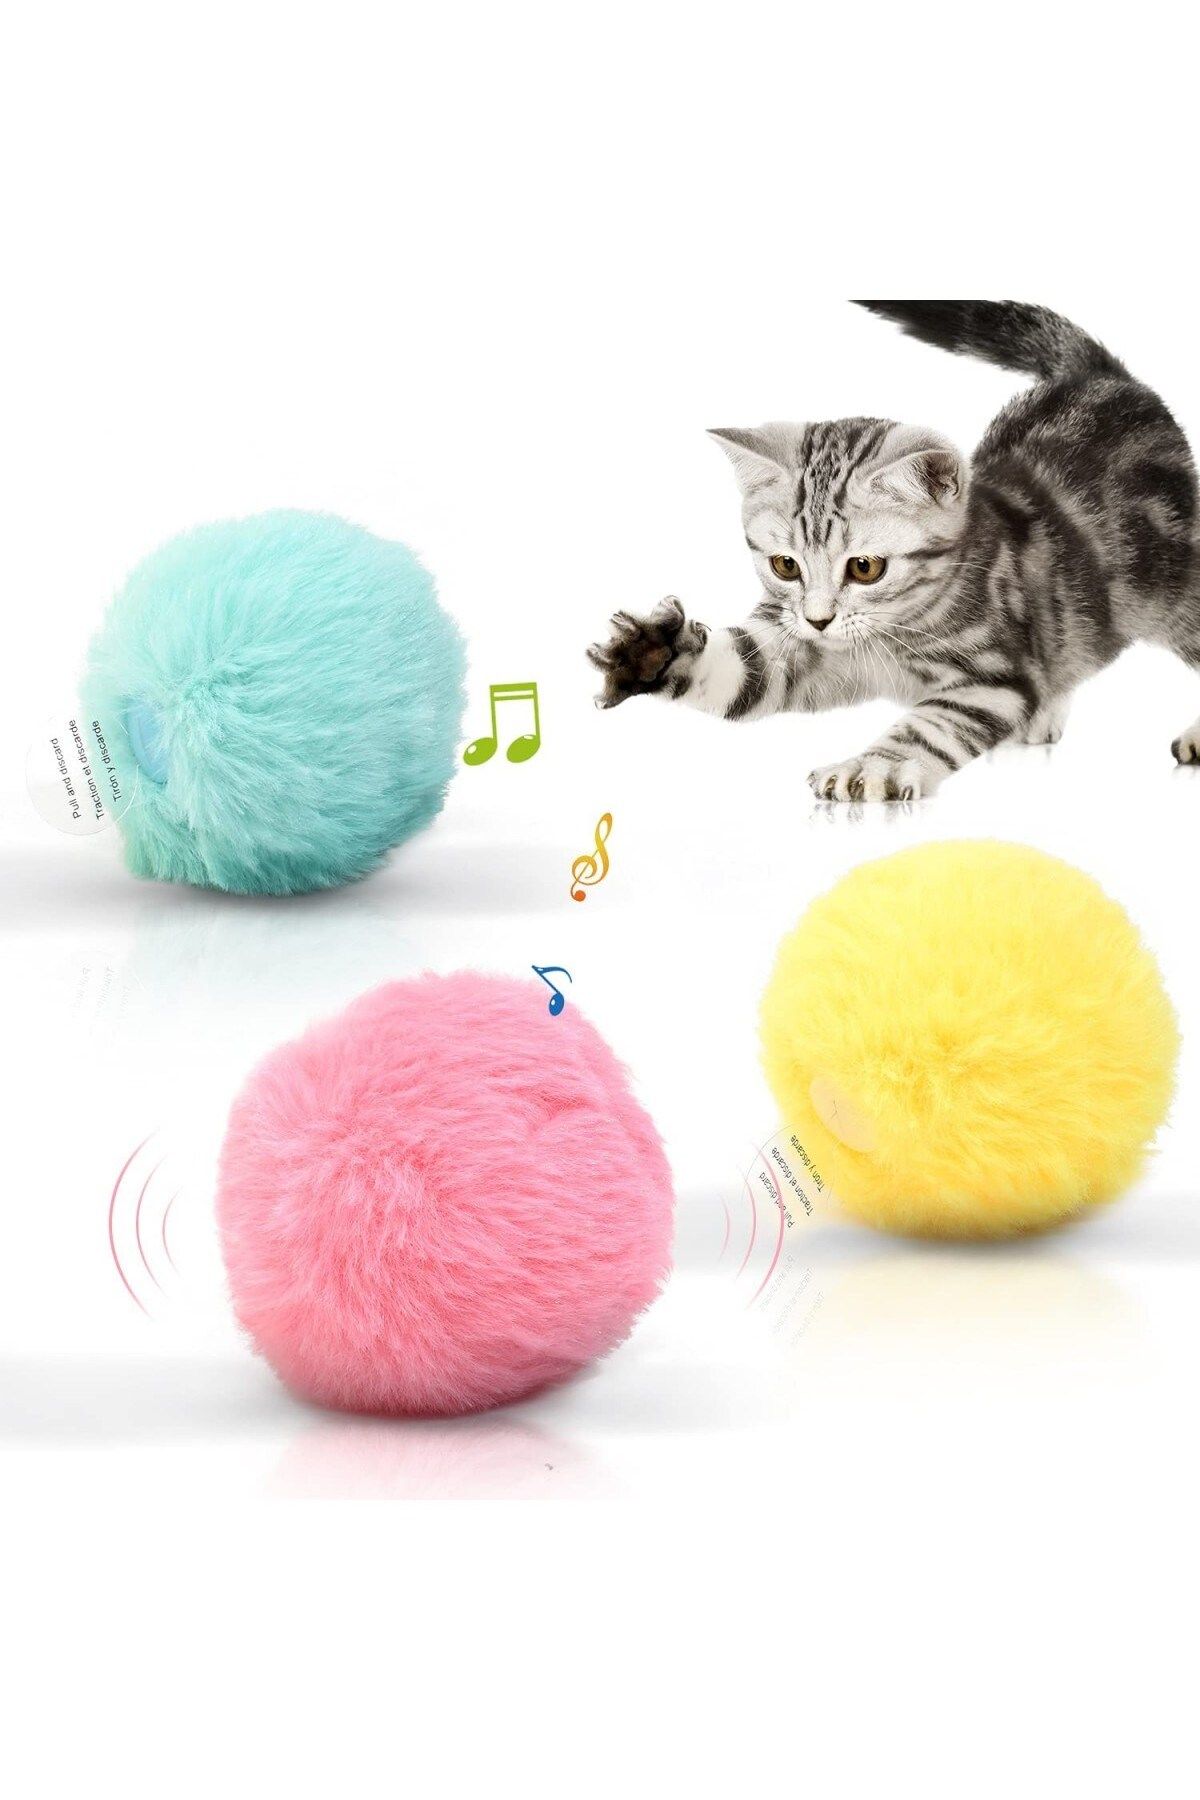 BUSHOP Peluş Kedi Oyuncak Interaktif Kedi Oyuncağı Gerçek Kuş Sesli - Pembe